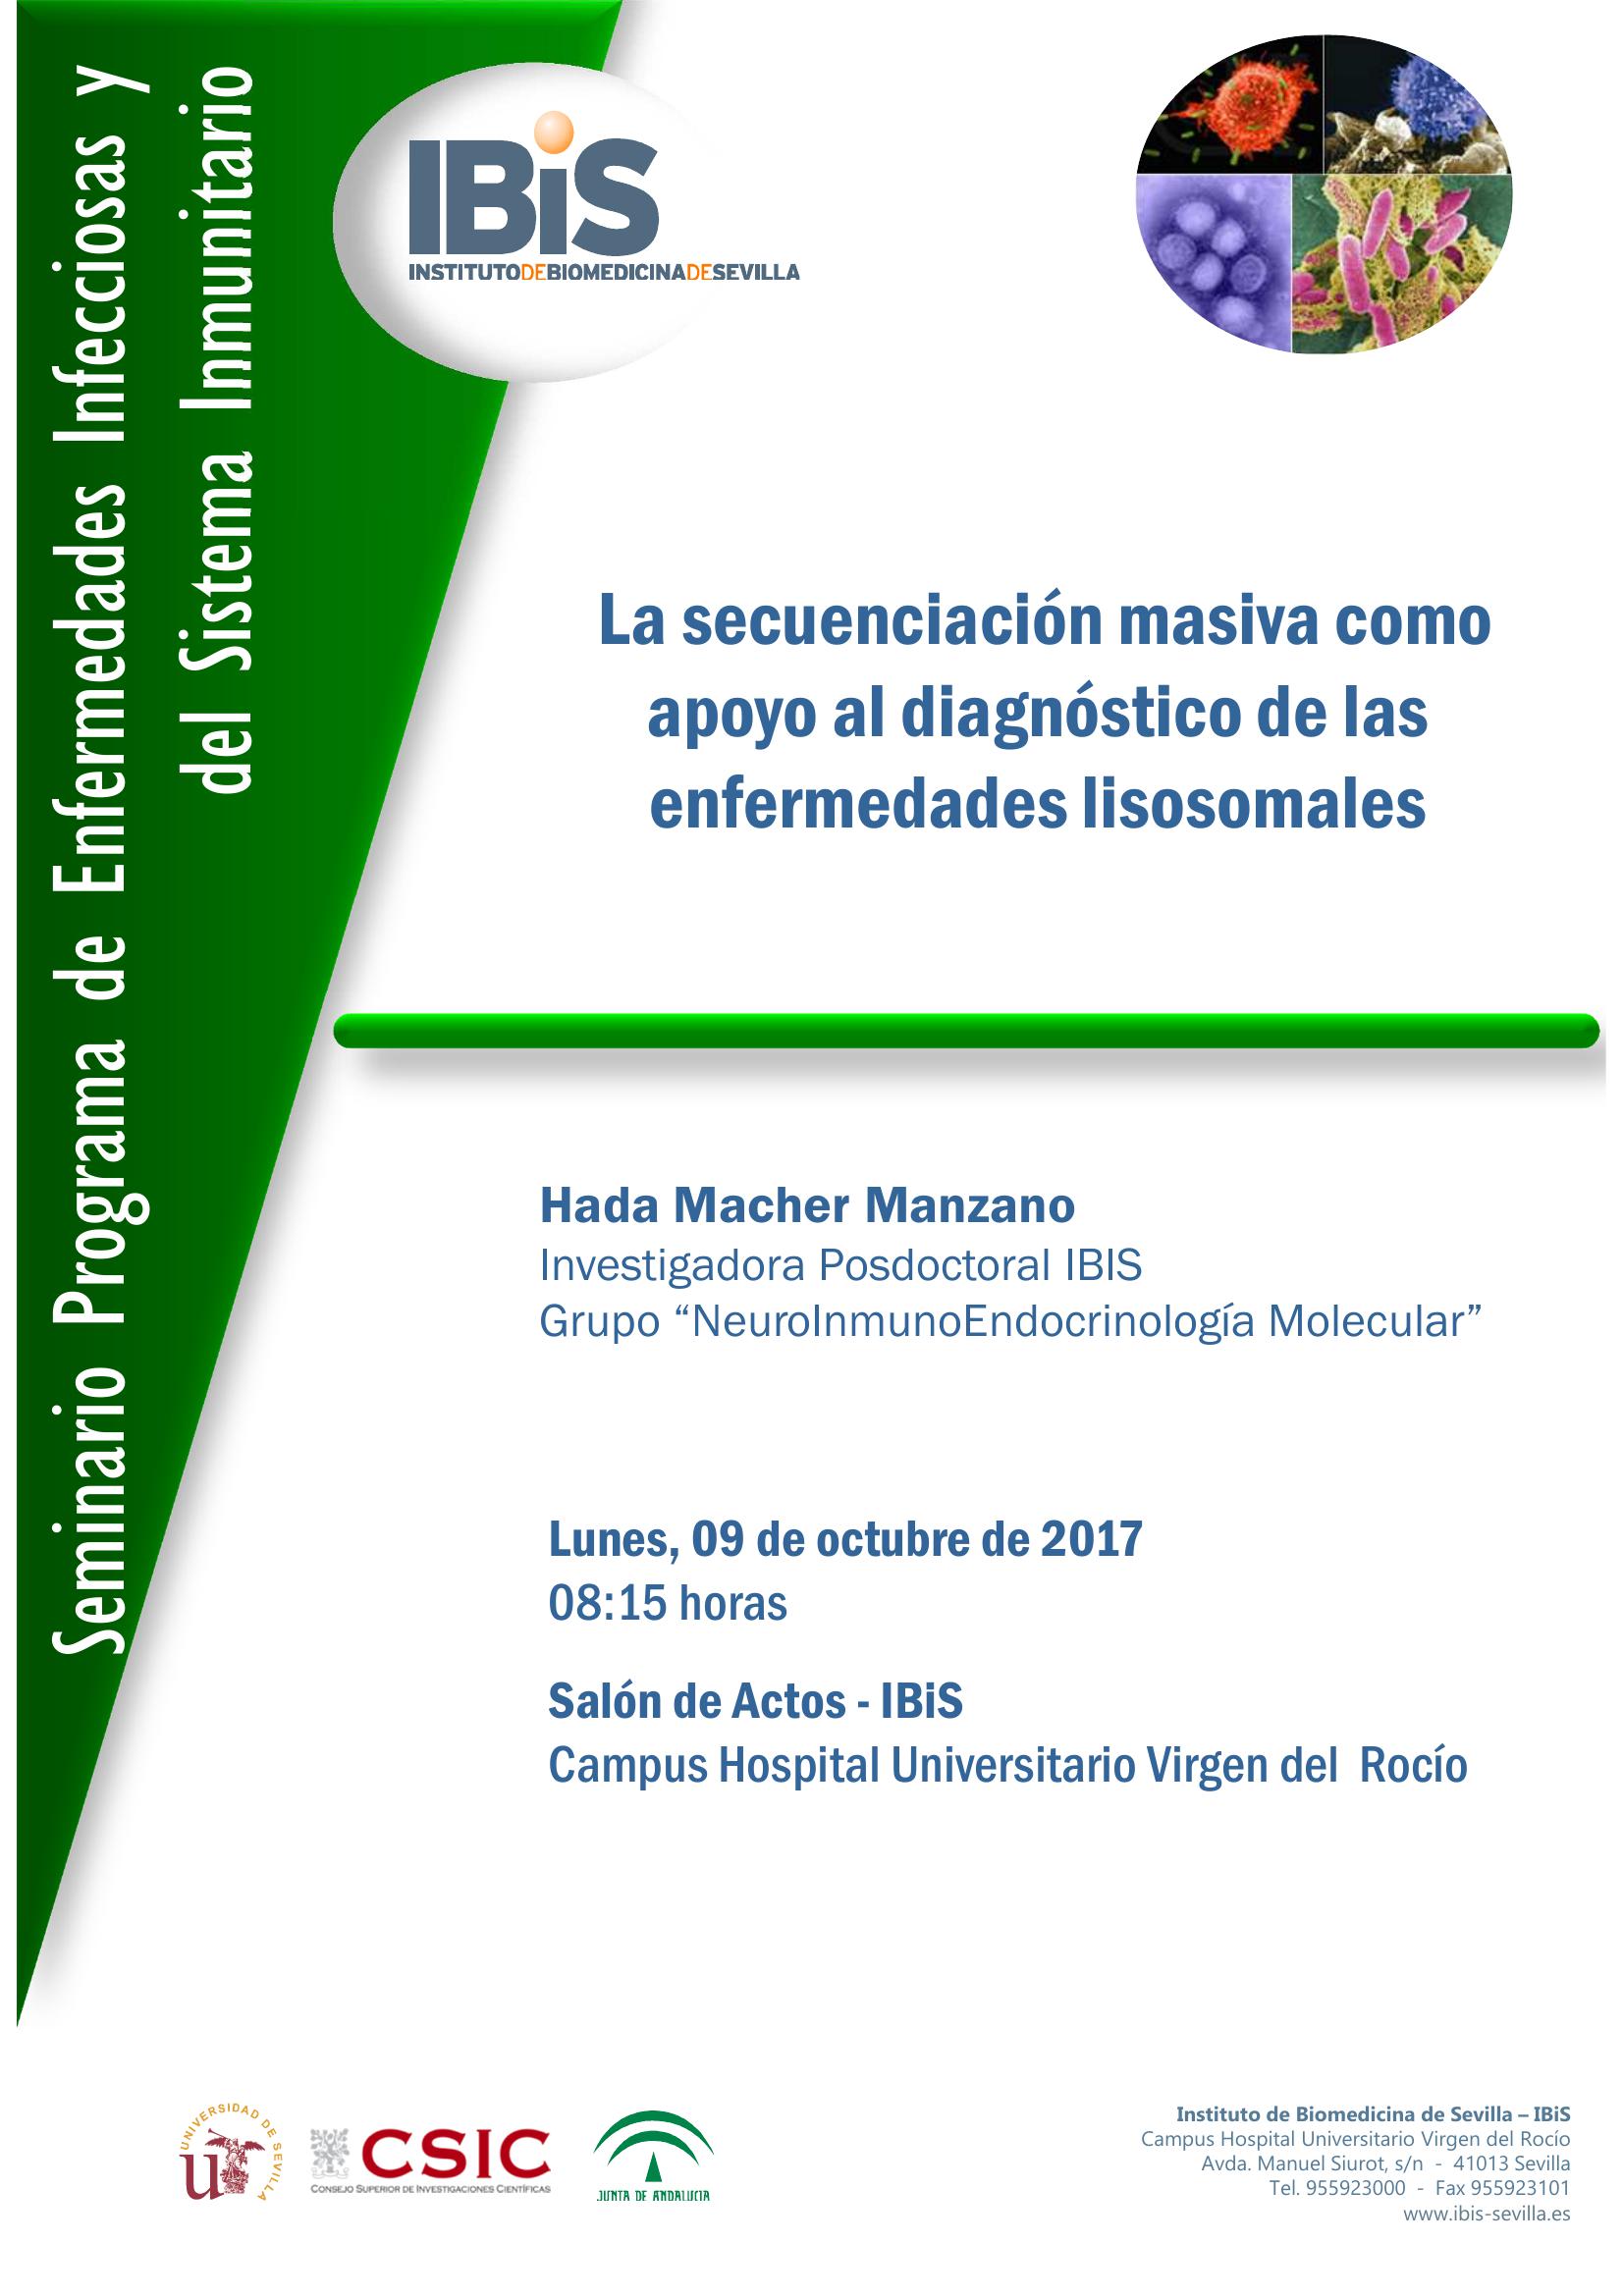 Poster: La secuenciación masiva como apoyo al diagnóstico de las enfermedades lisosomales